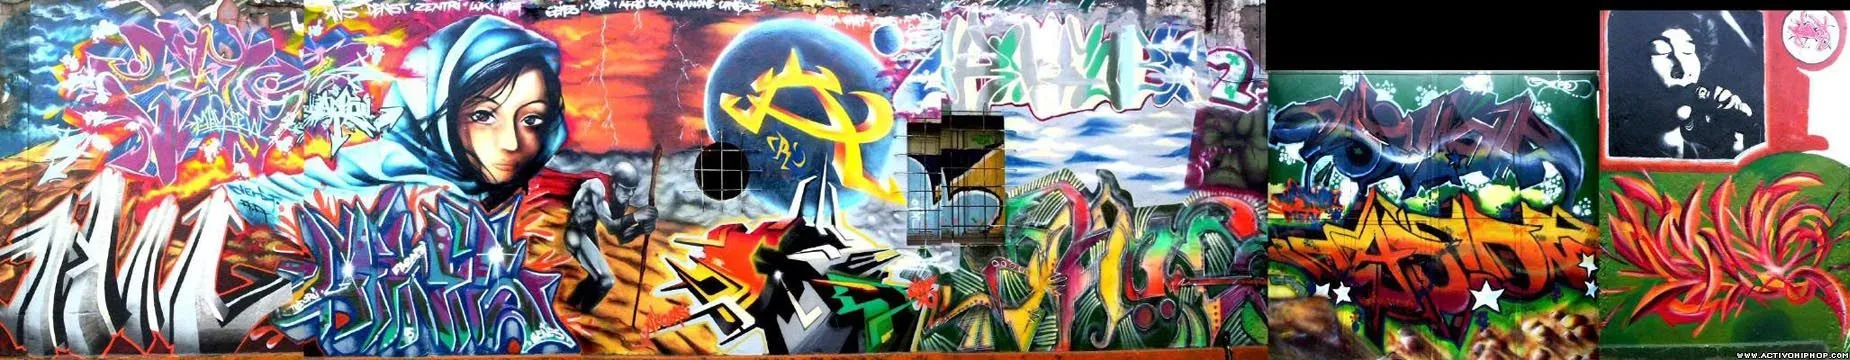 Activo Hip Hop - GRAFFITI: Denst - Página 1